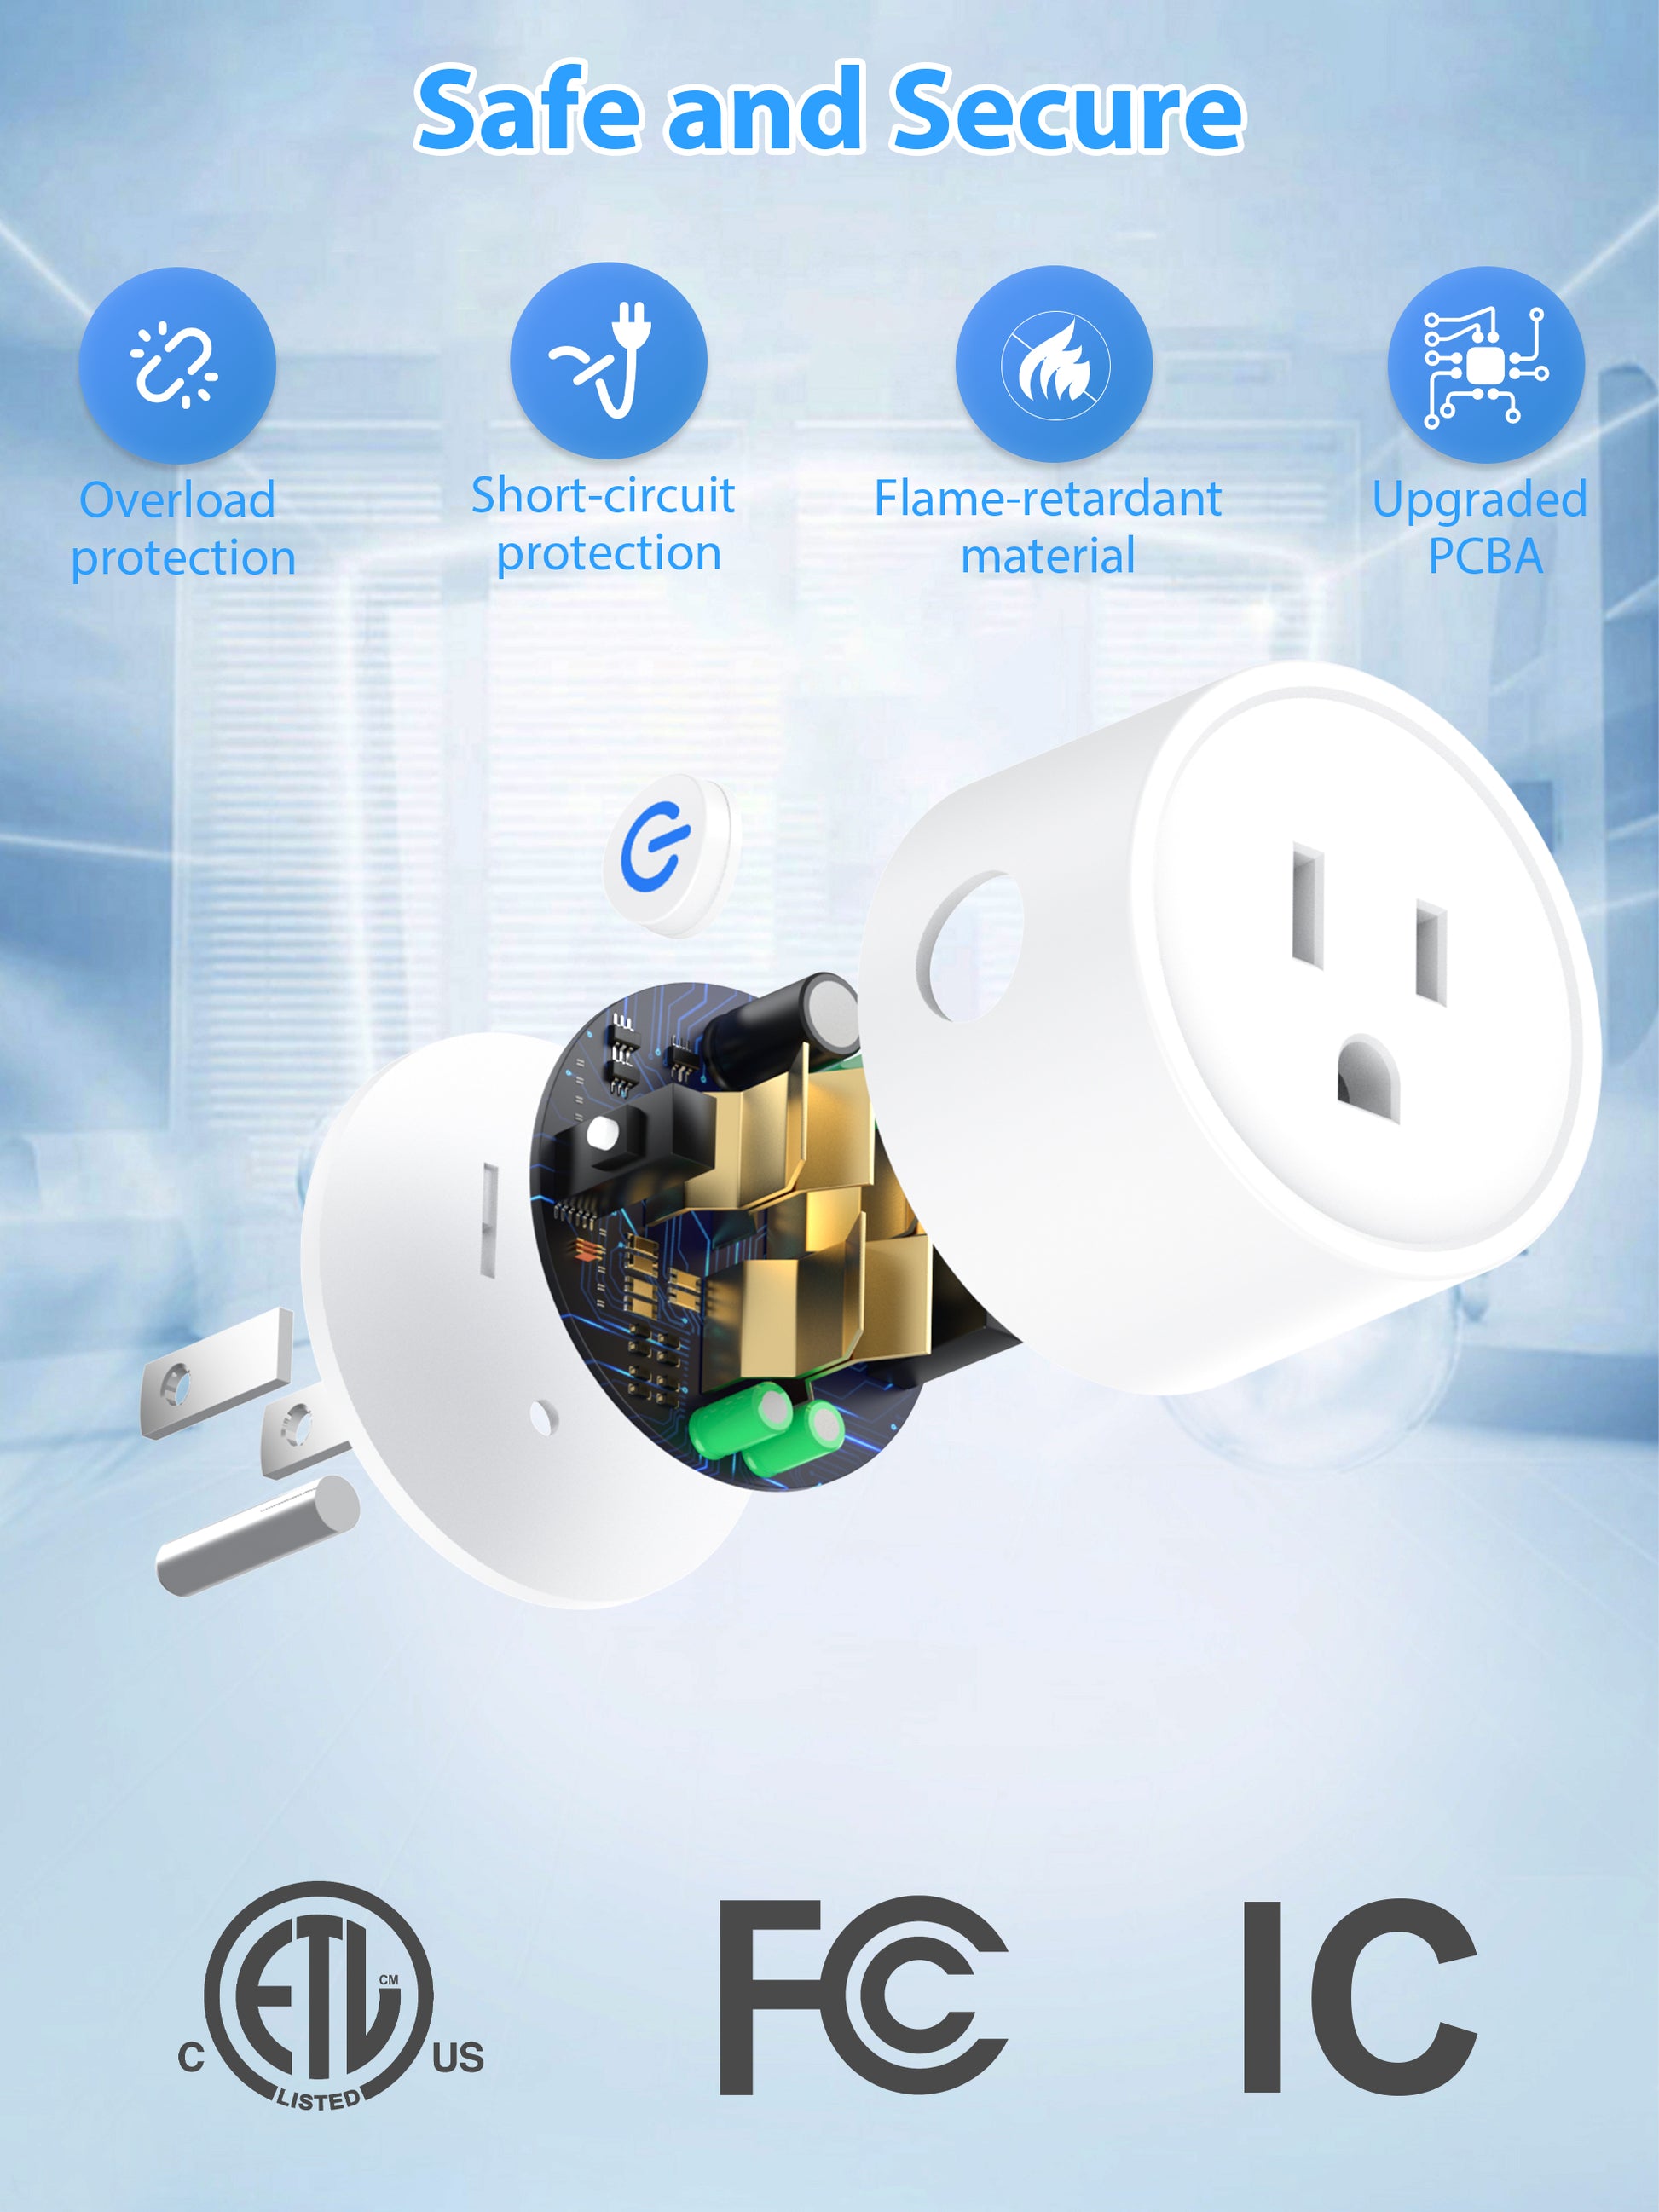 Generic Smart Plug EIGHTREE, Alexa Smart Plugs That Work with